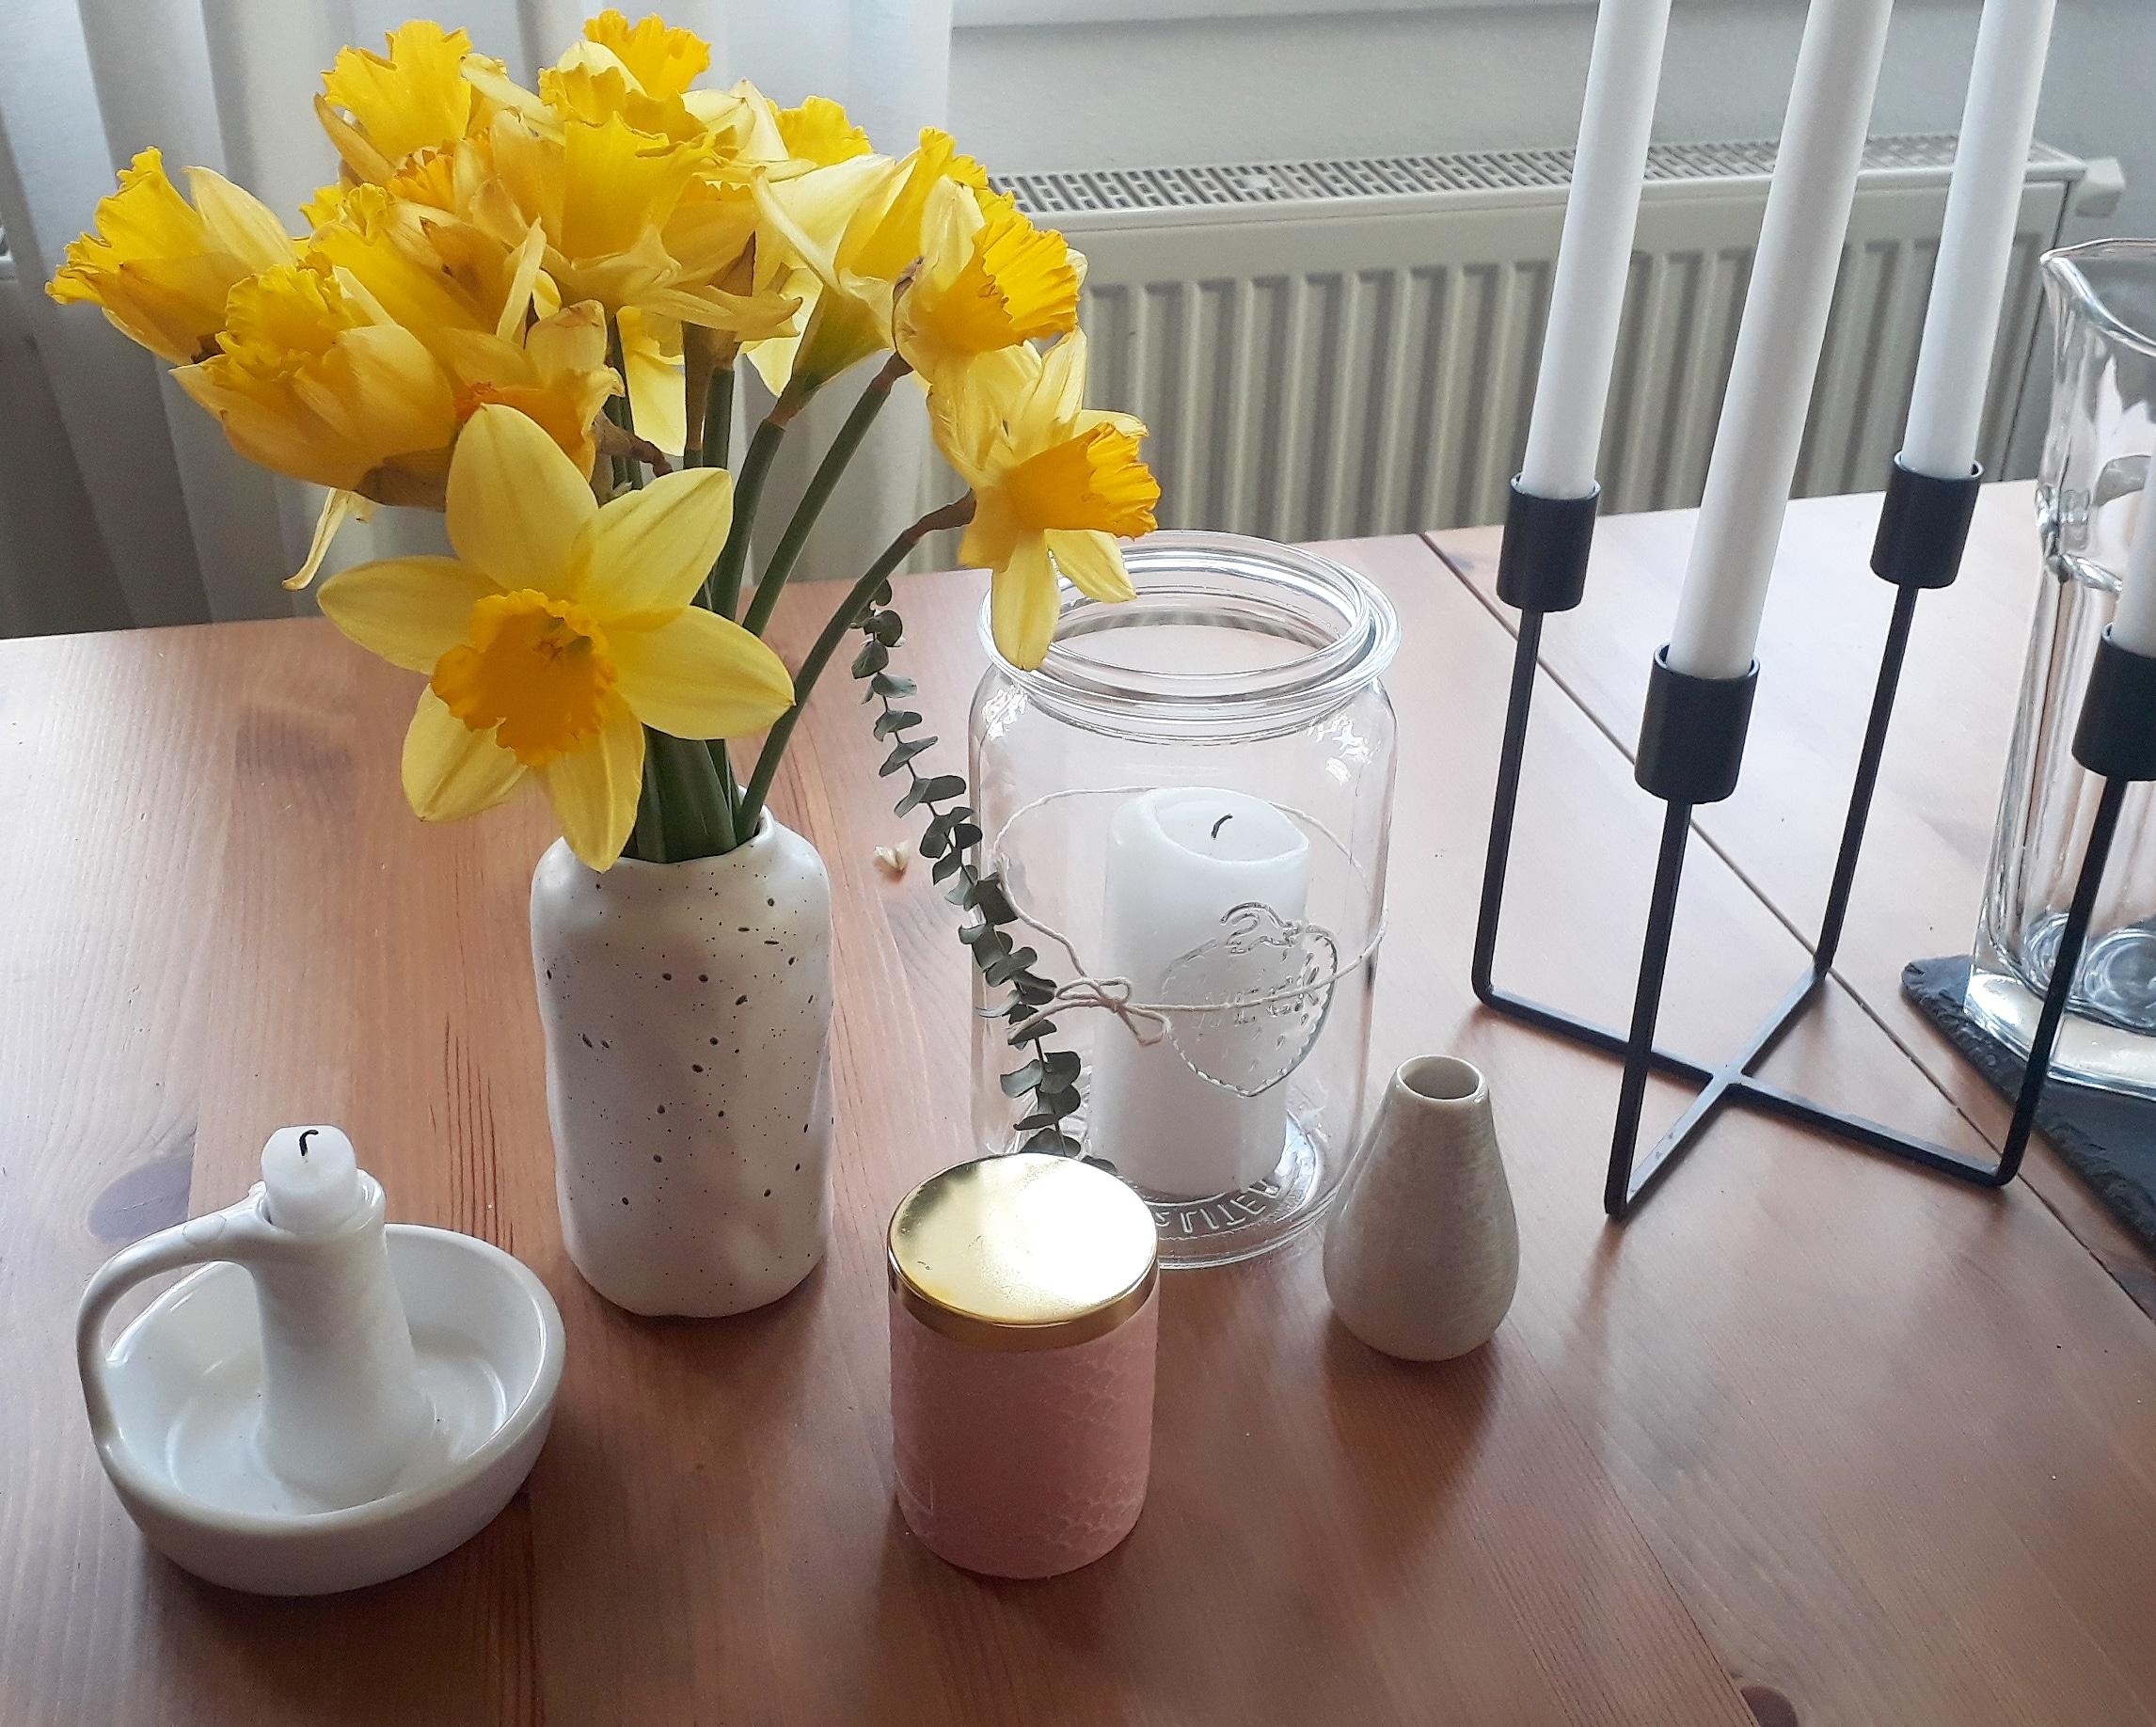 Vorfrühling im Wohnzimmer zu Beginn der #fastenzeit...#osterperspektive! 
#freshflowers #blumen #esszimmer